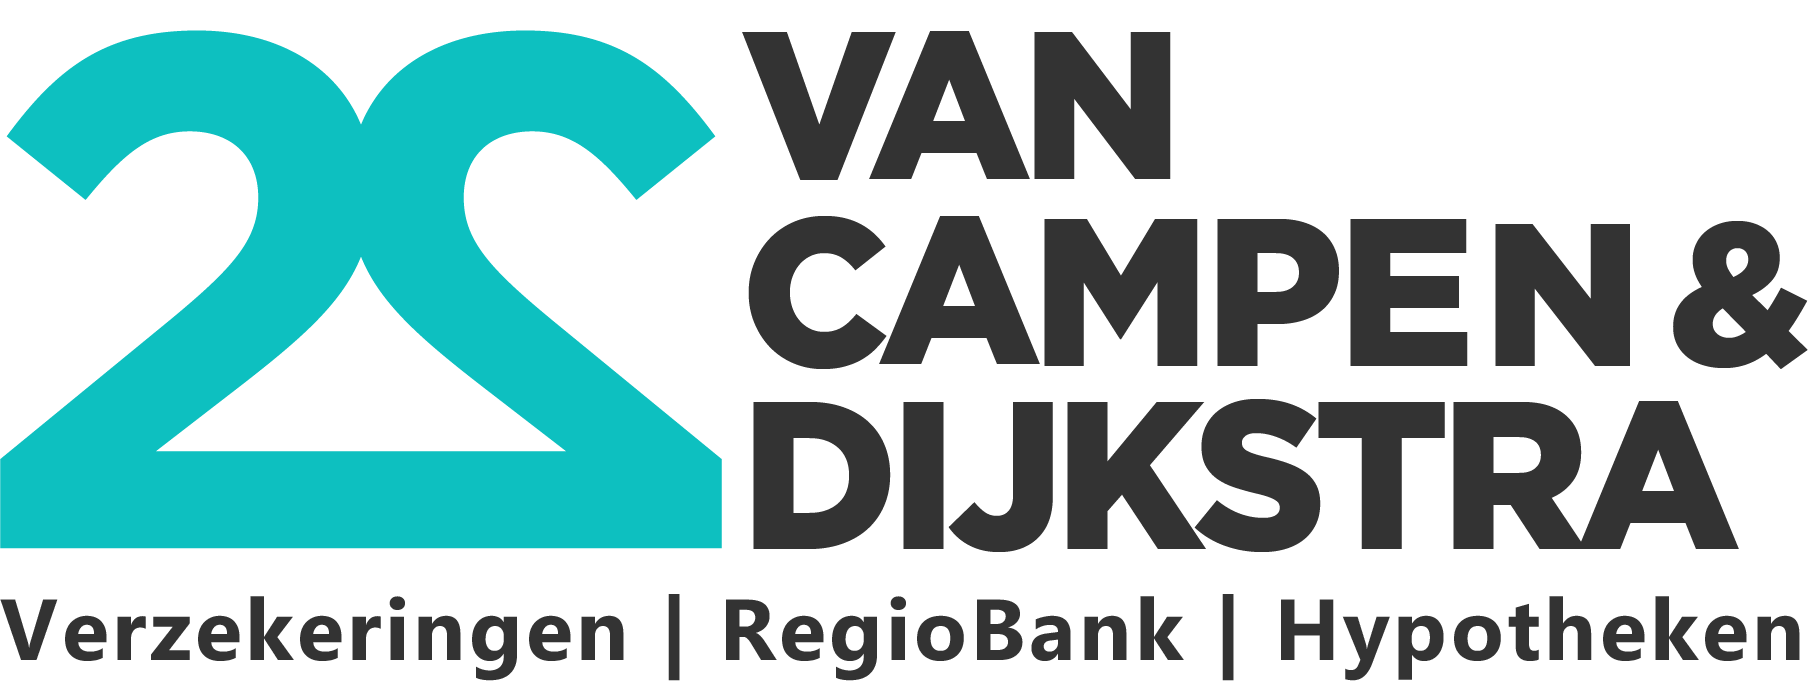 Van Campen & Dijkstra